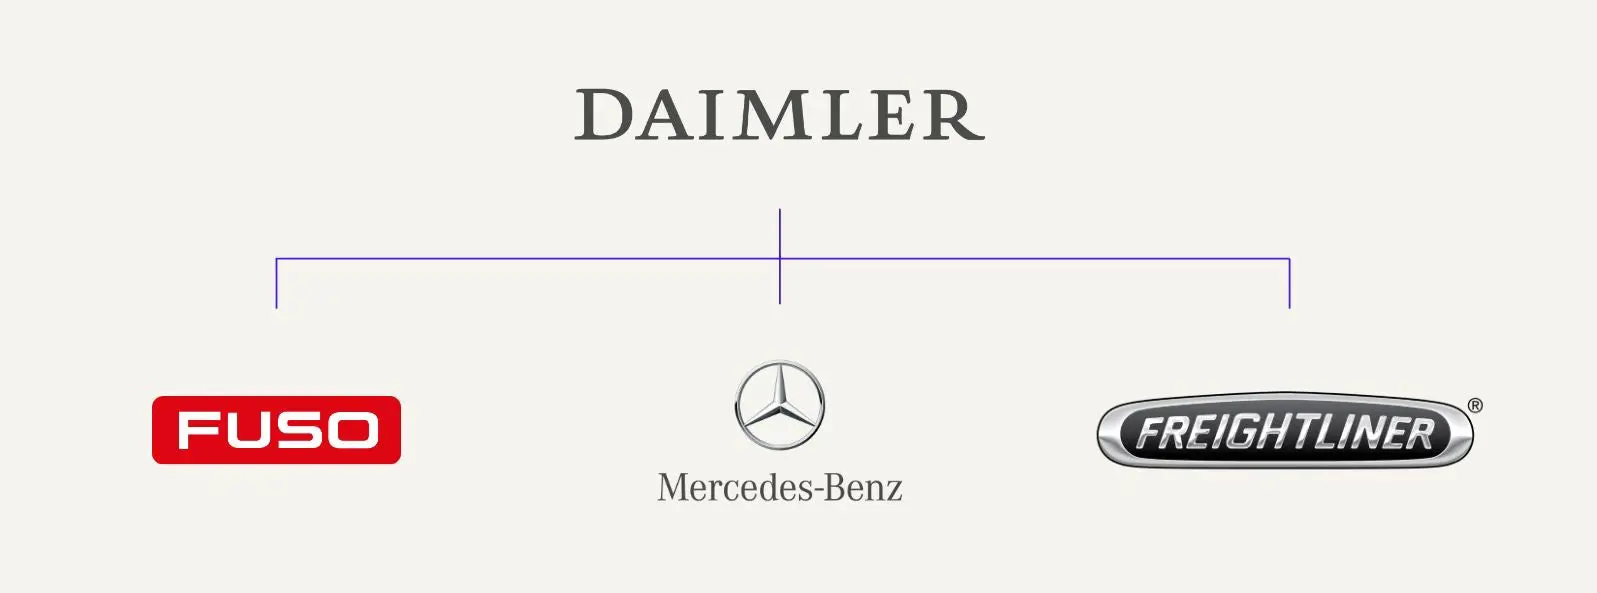 Daimler_brands.jpg